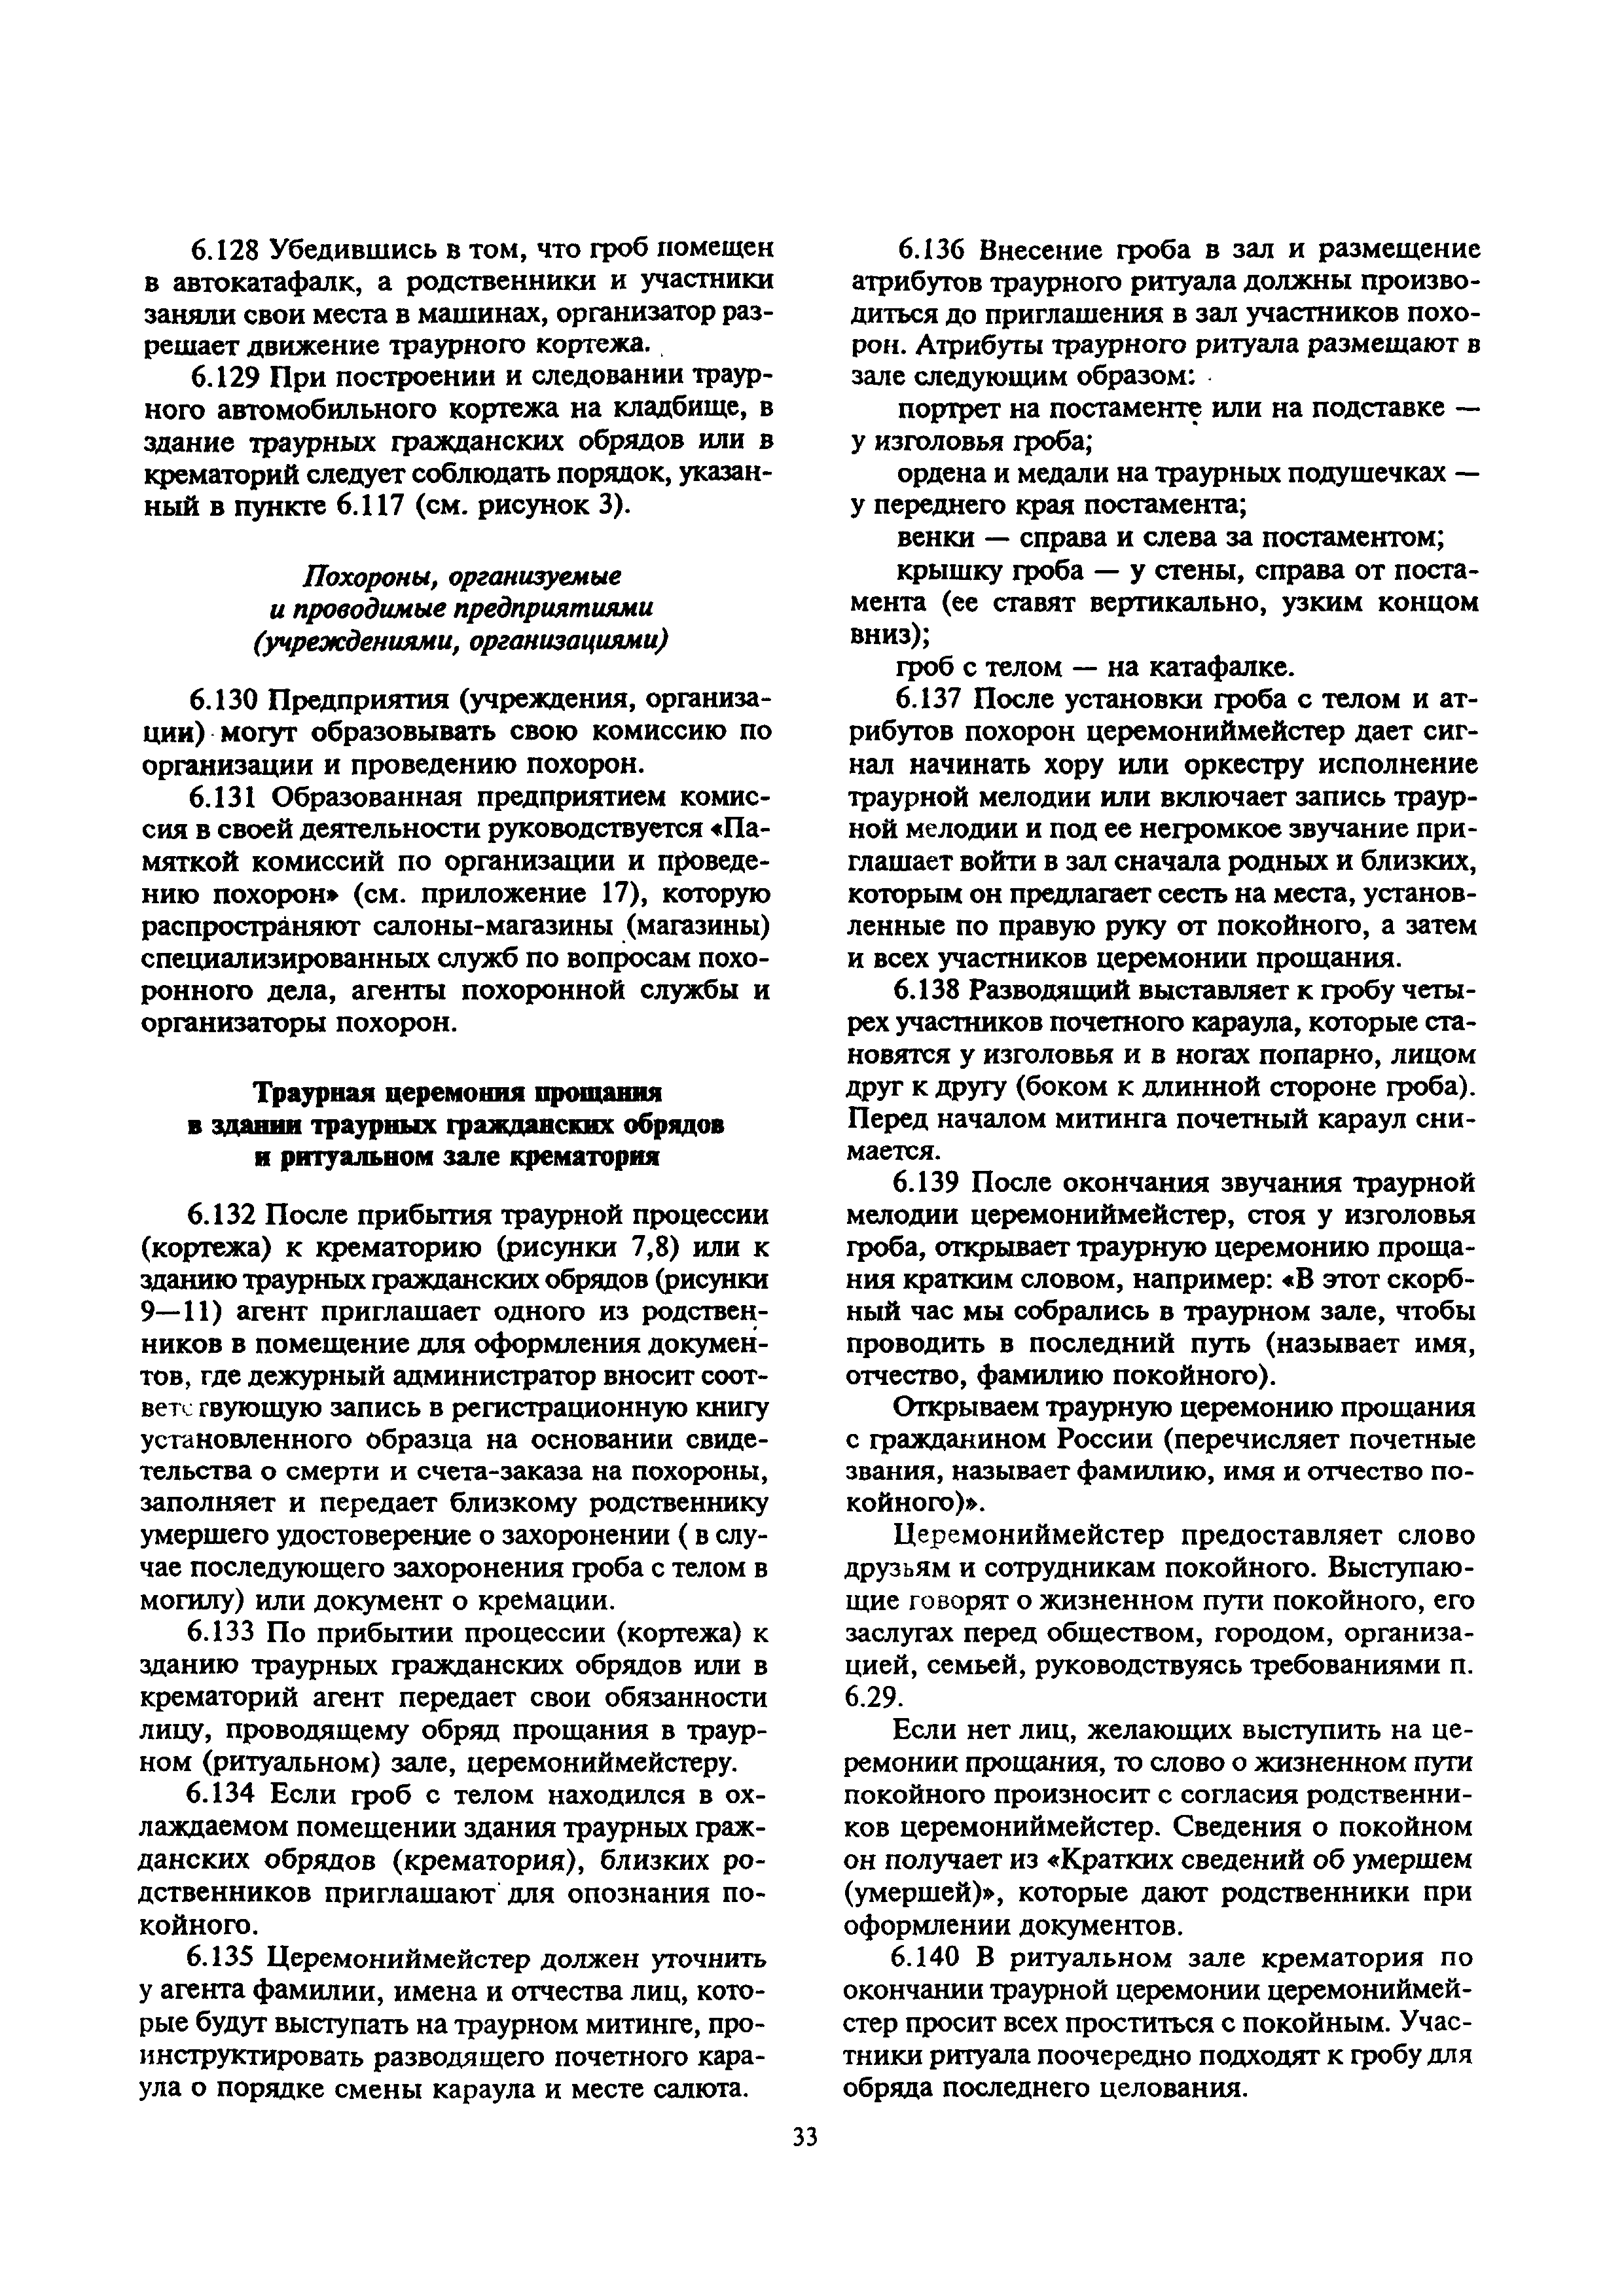 МДС 13-2.2000